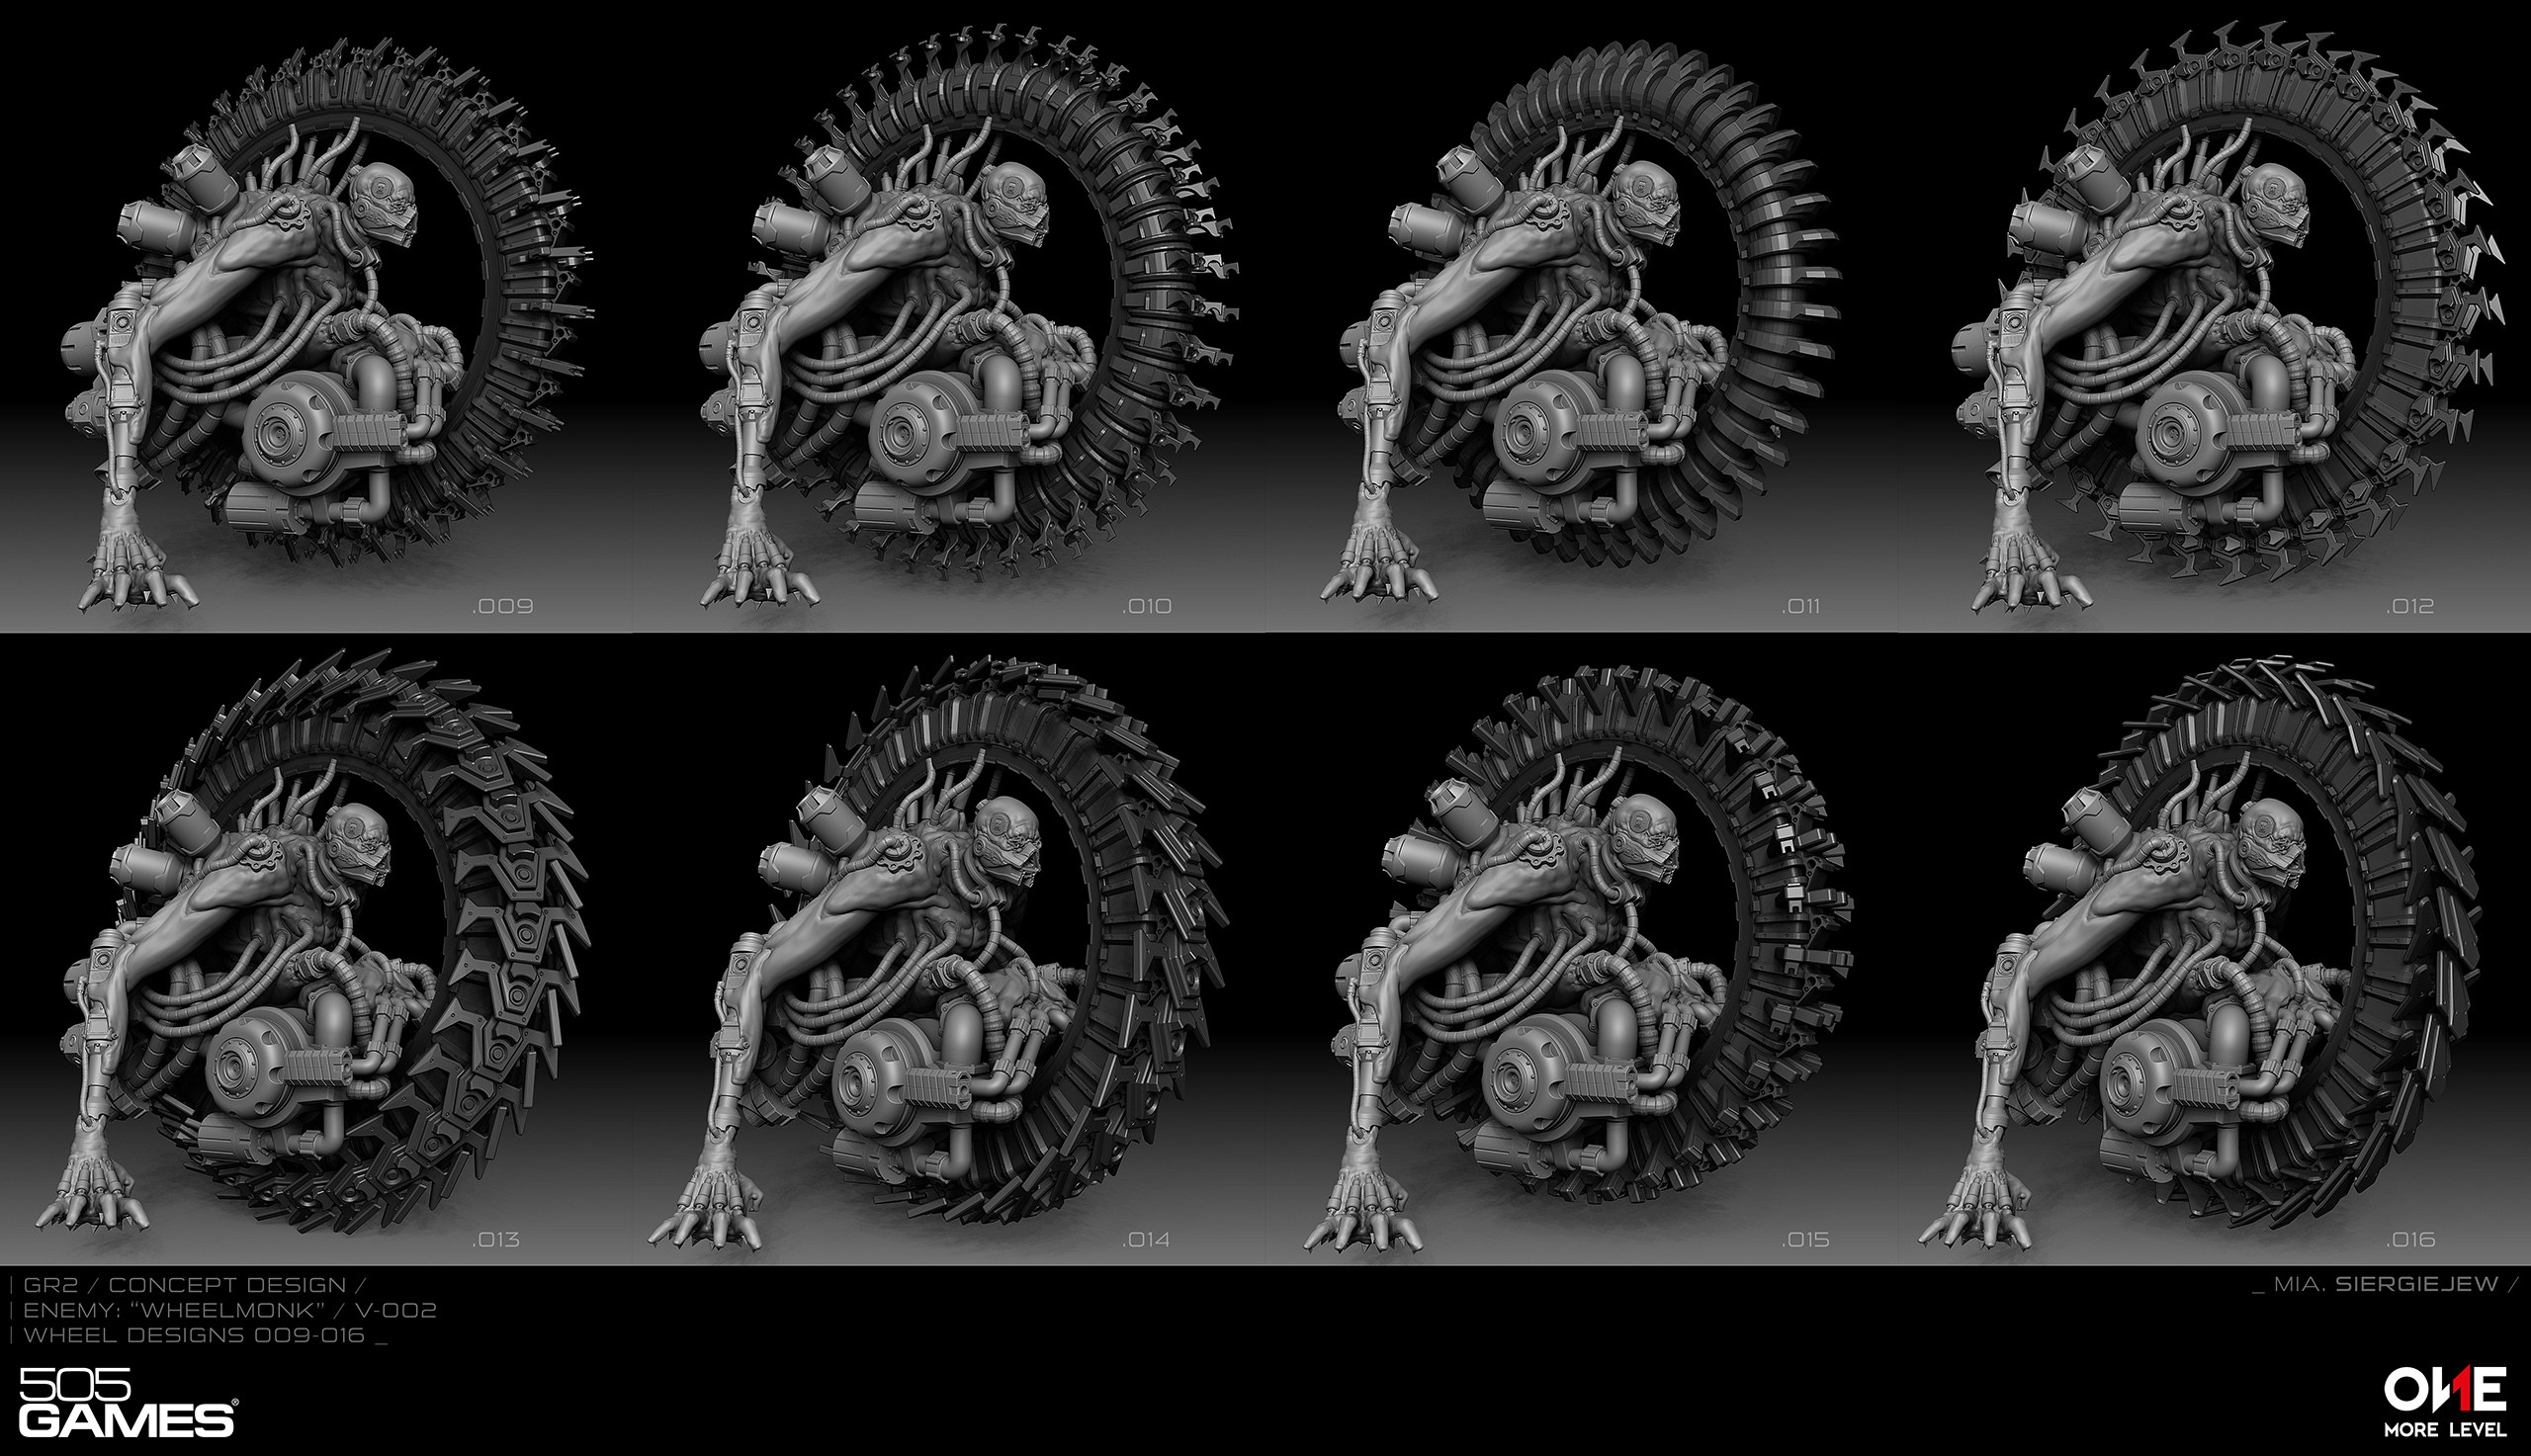 "Spine"-wheel designs 01